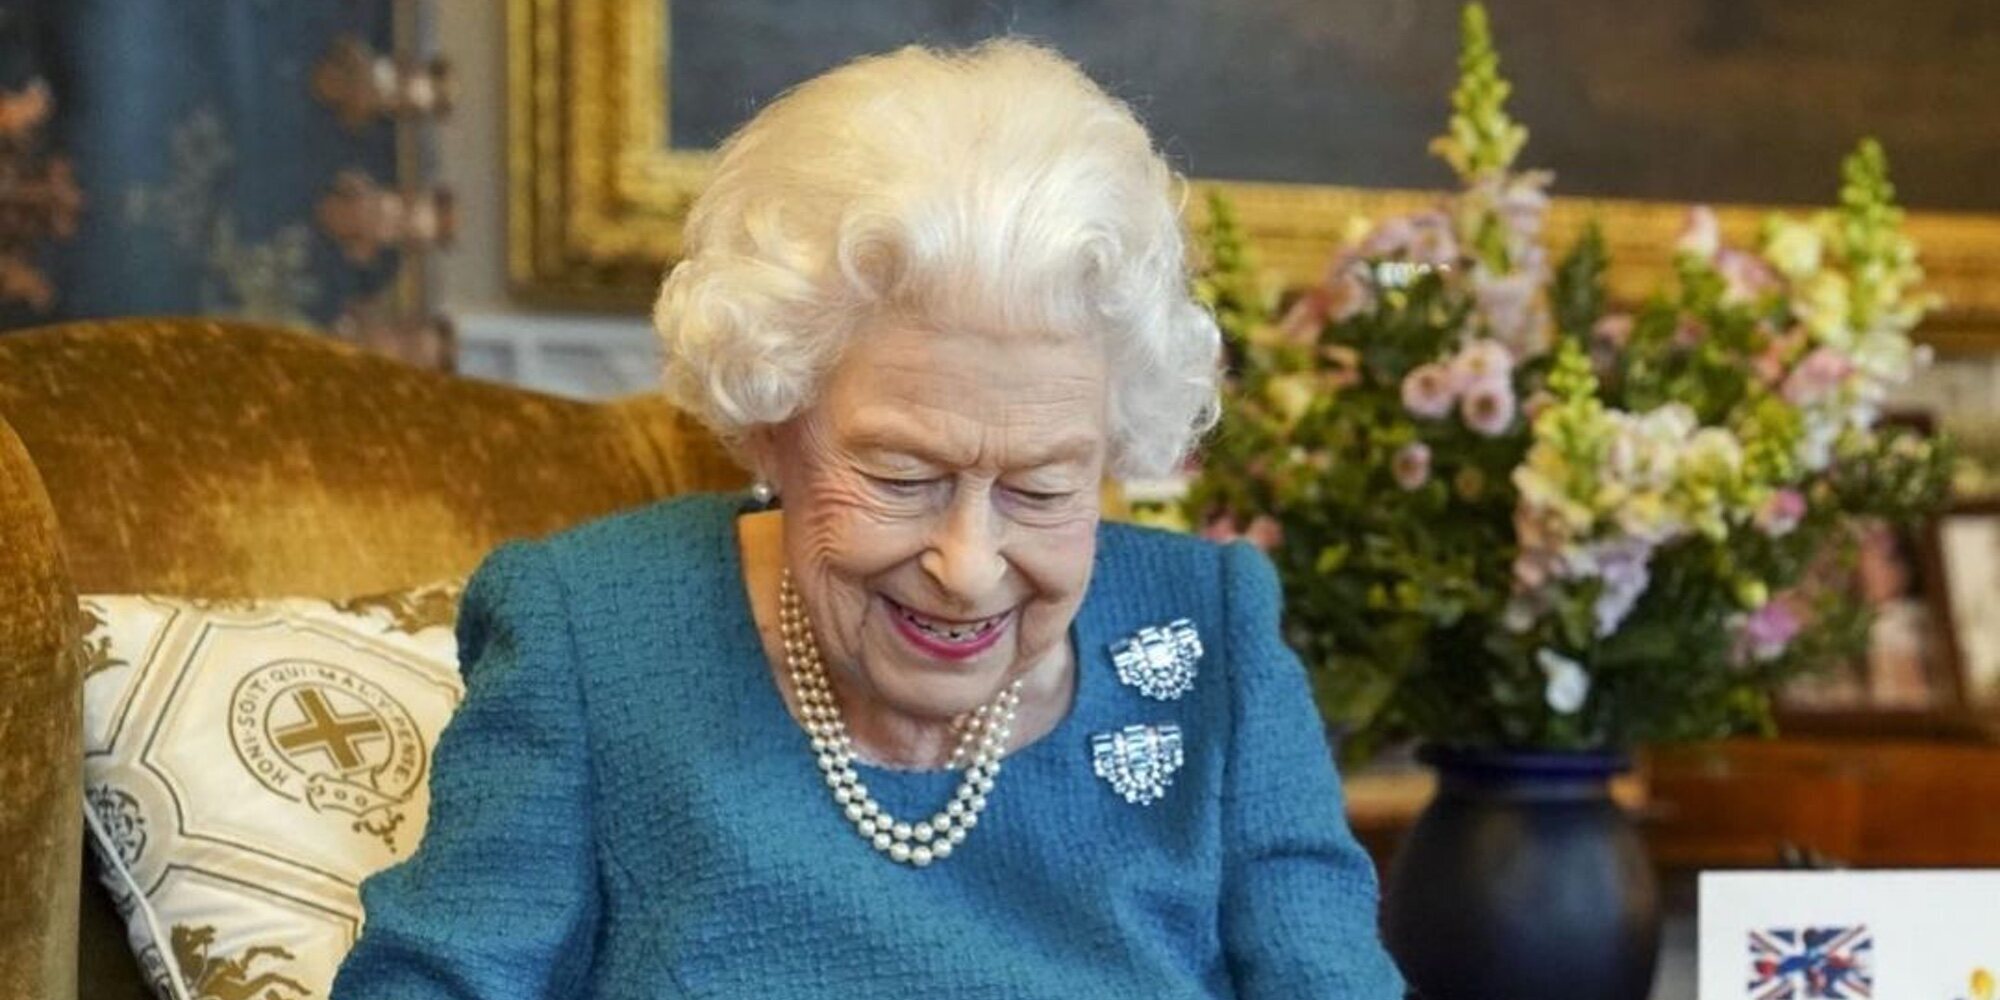 La Reina Isabel celebra por adelantado sus 70 años de reinado con sus mascotas y divertidos regalos